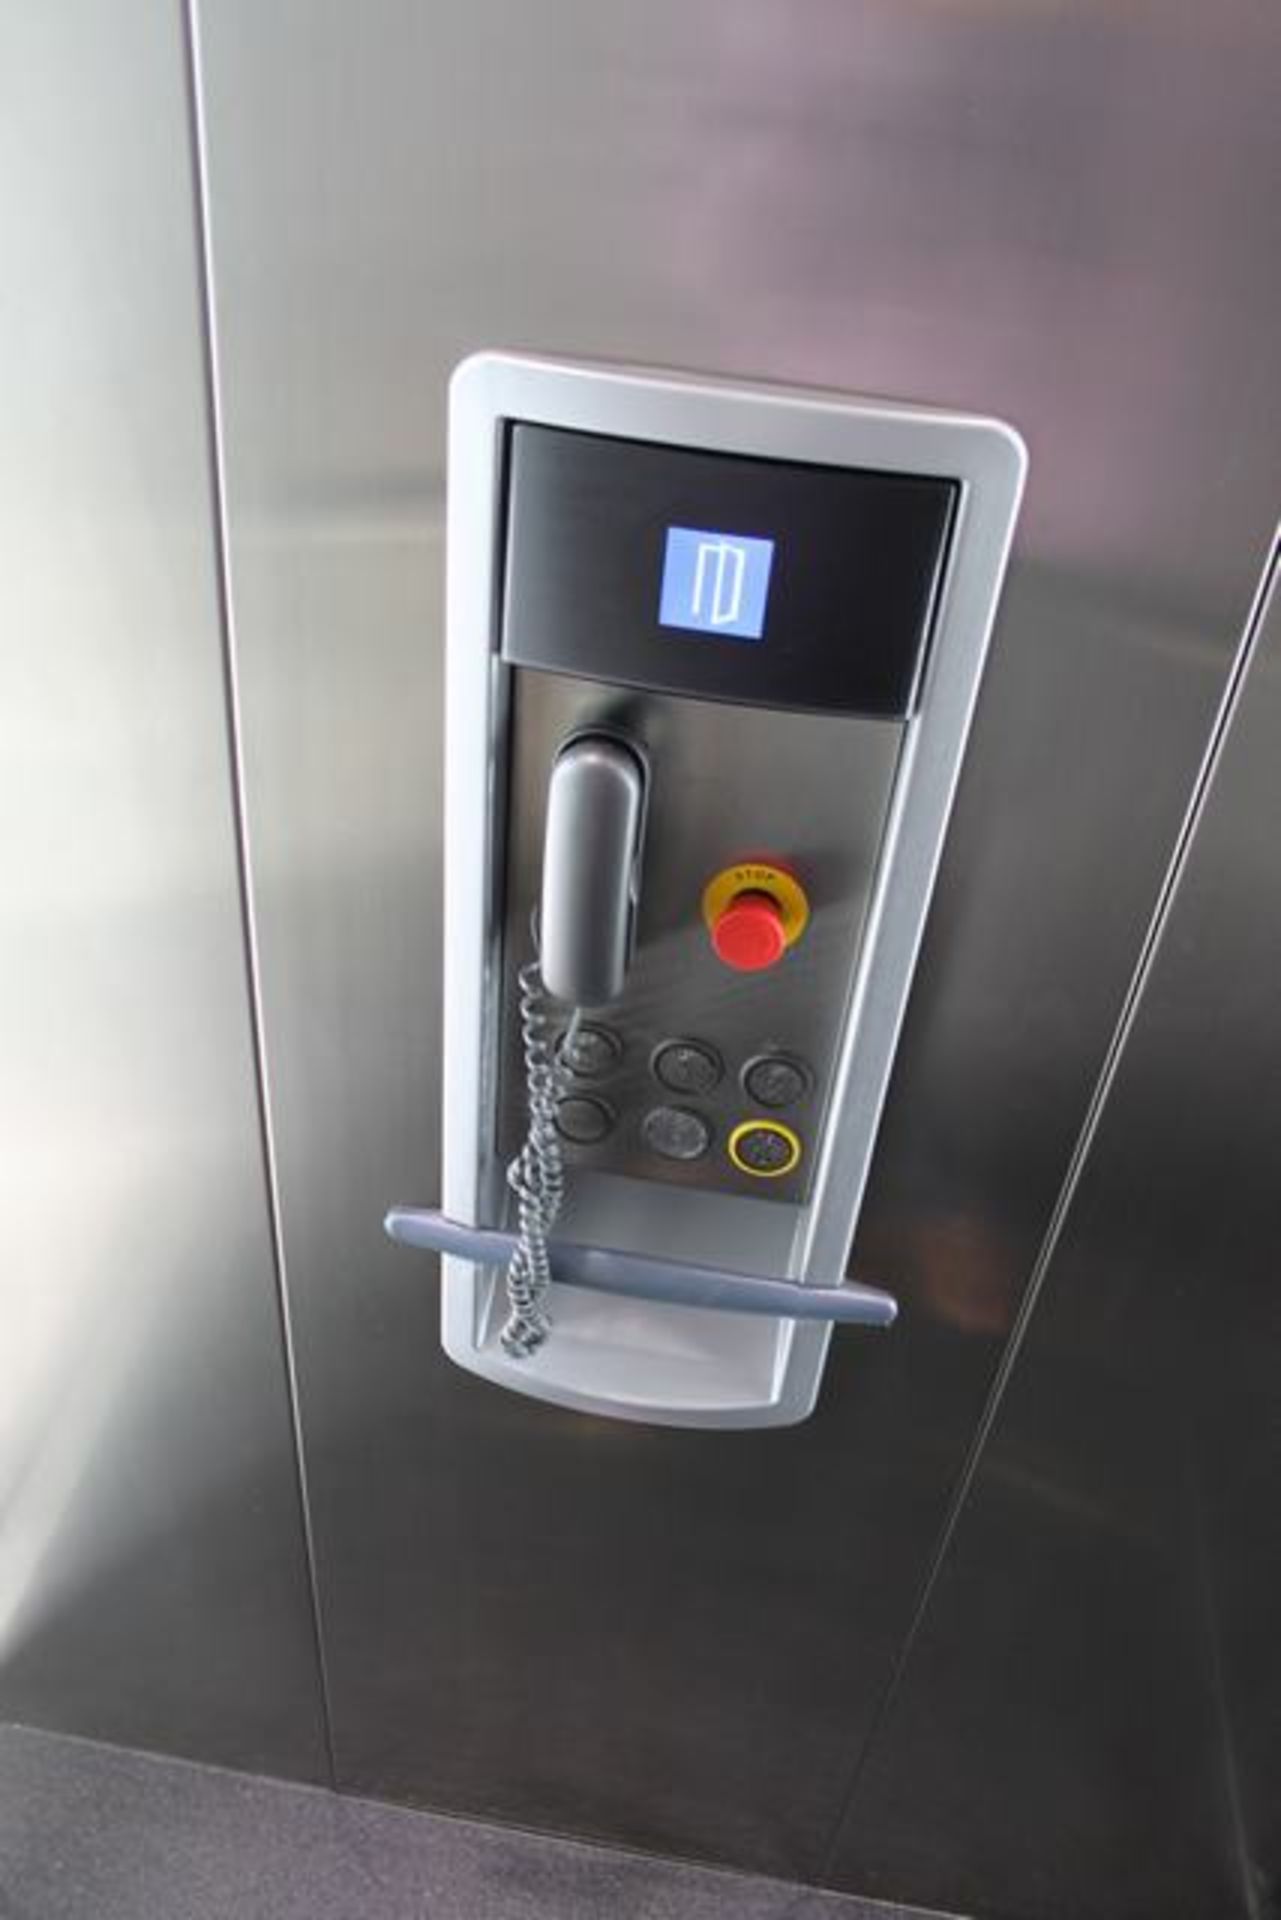 Thyssenkrupp Ceteco 0R04 400kf passenger elevator YOM 2011 (s/n 3002435) - Image 2 of 3